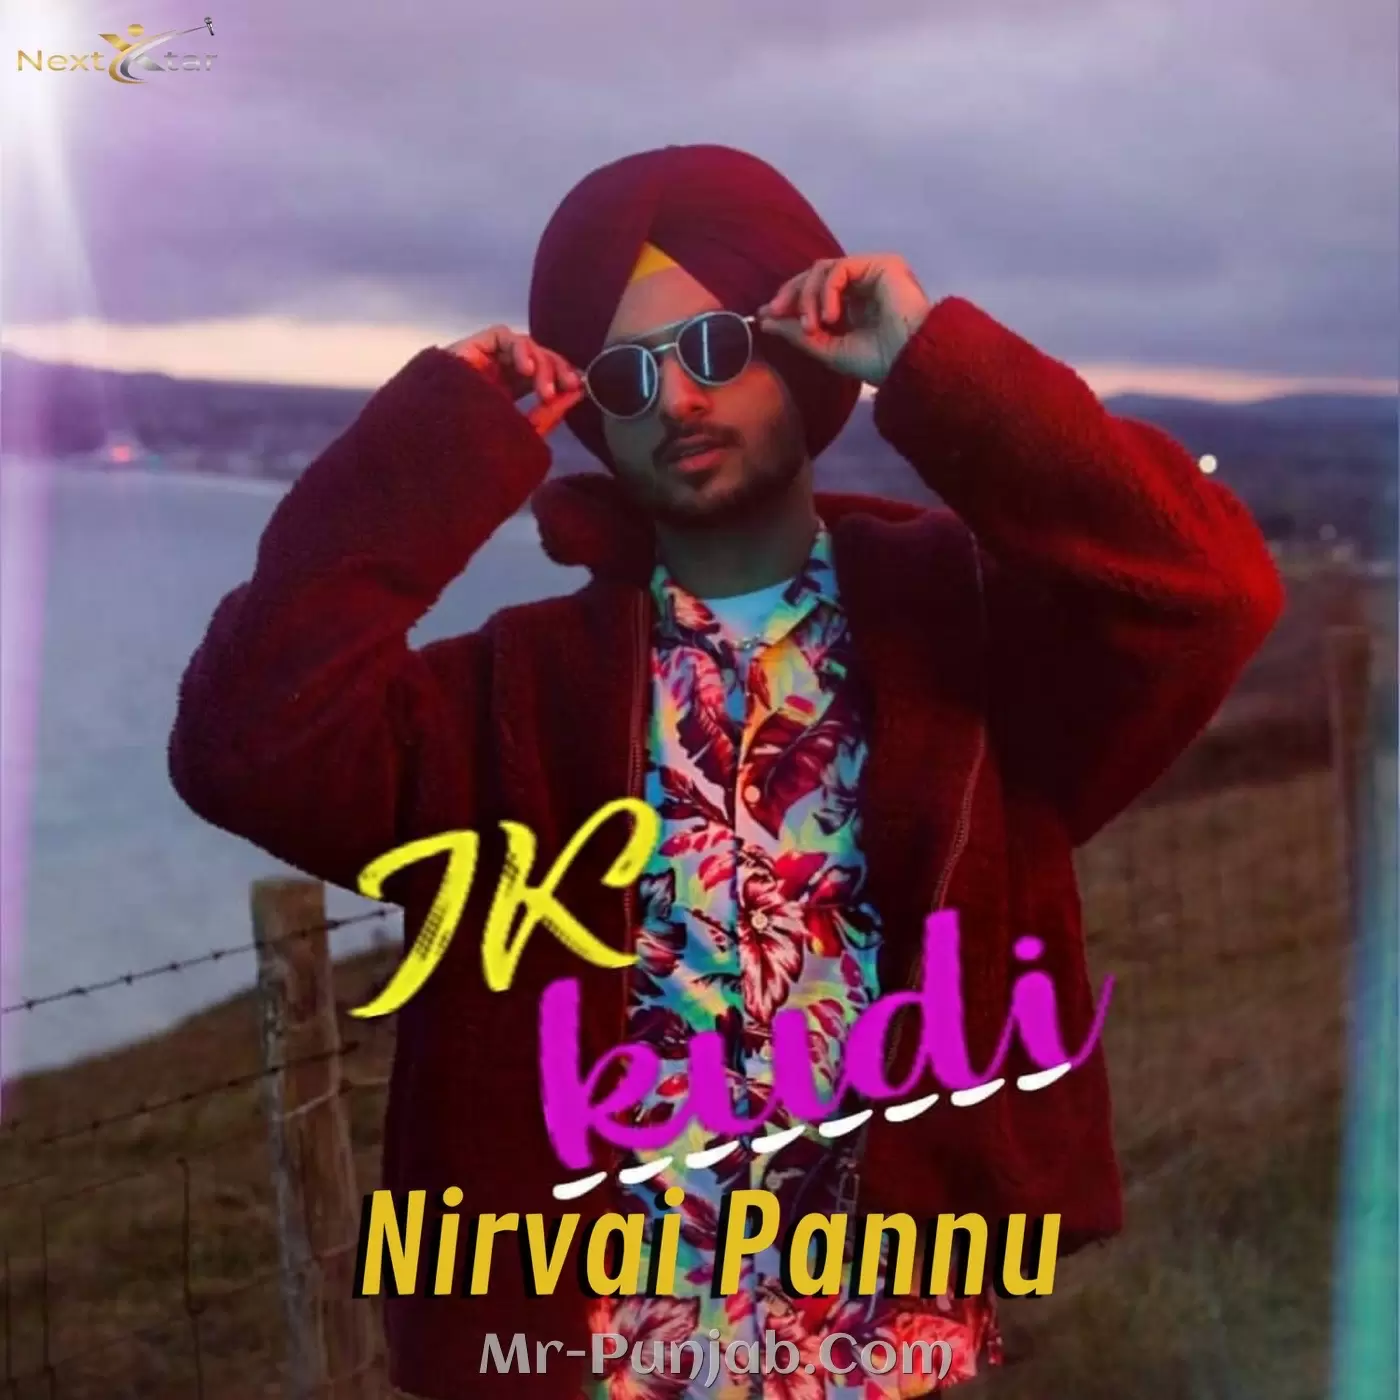 Ik Kudi Nirvair Pannu Mp3 Download Song - Mr-Punjab